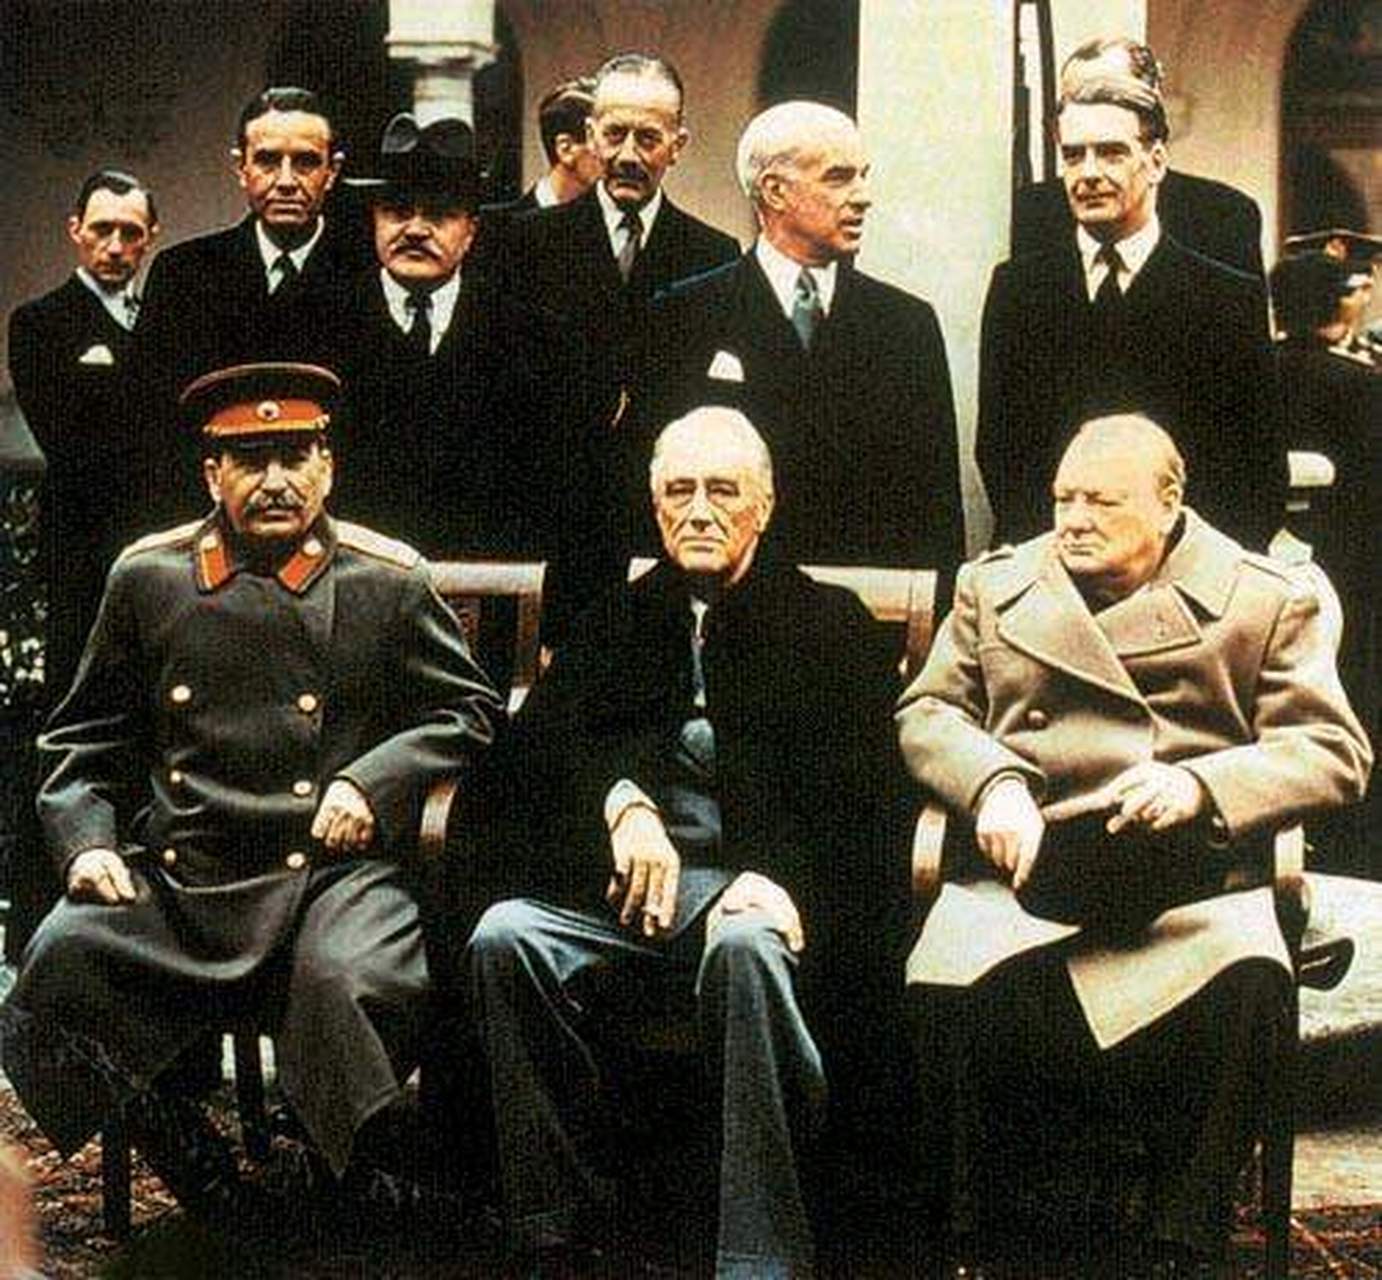 二战时期雅尔塔会议三大巨头:杜鲁门,斯大林,丘吉尔.